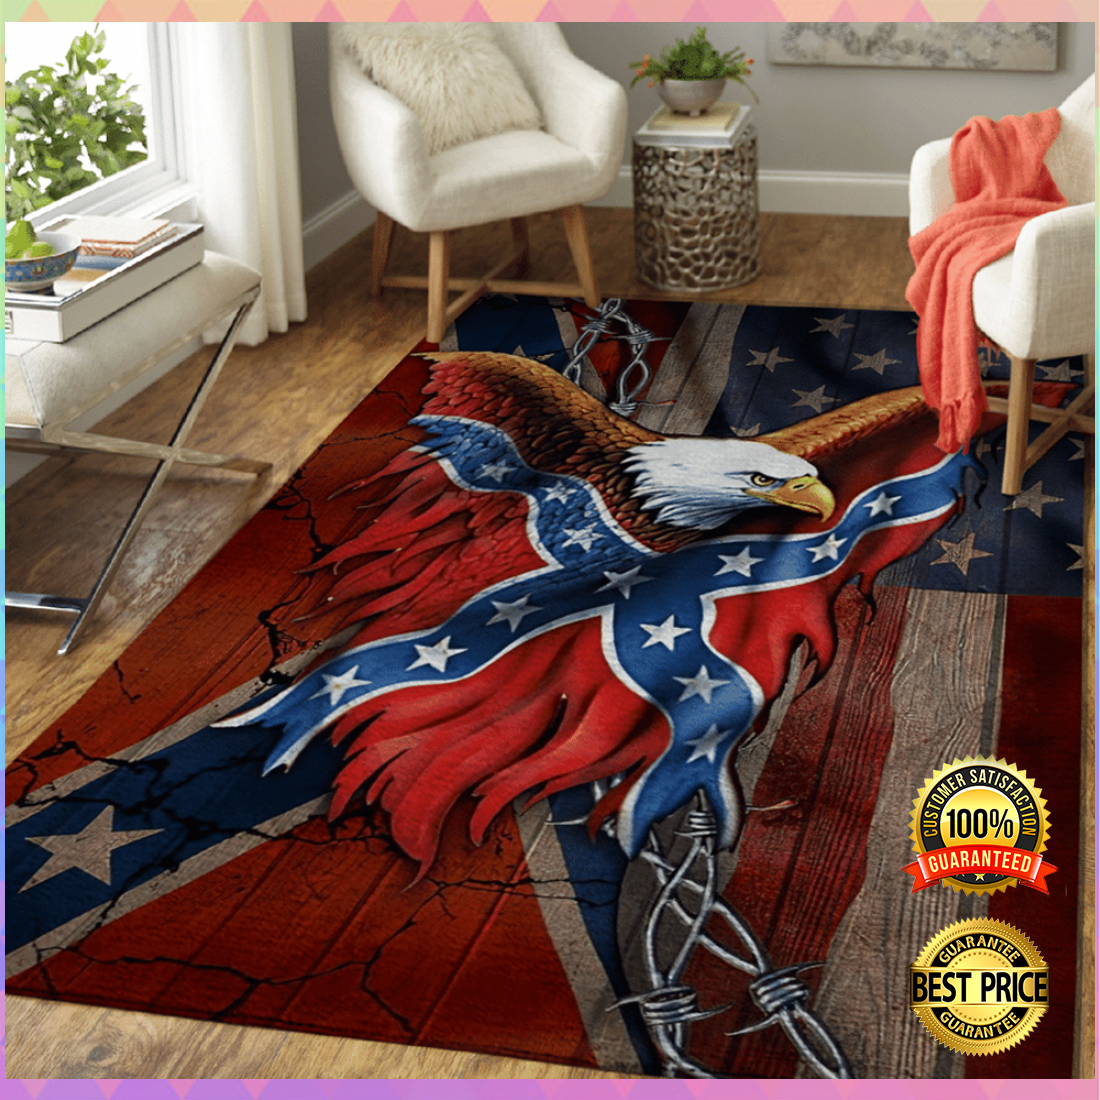 Eagle and confederate battle flag rug